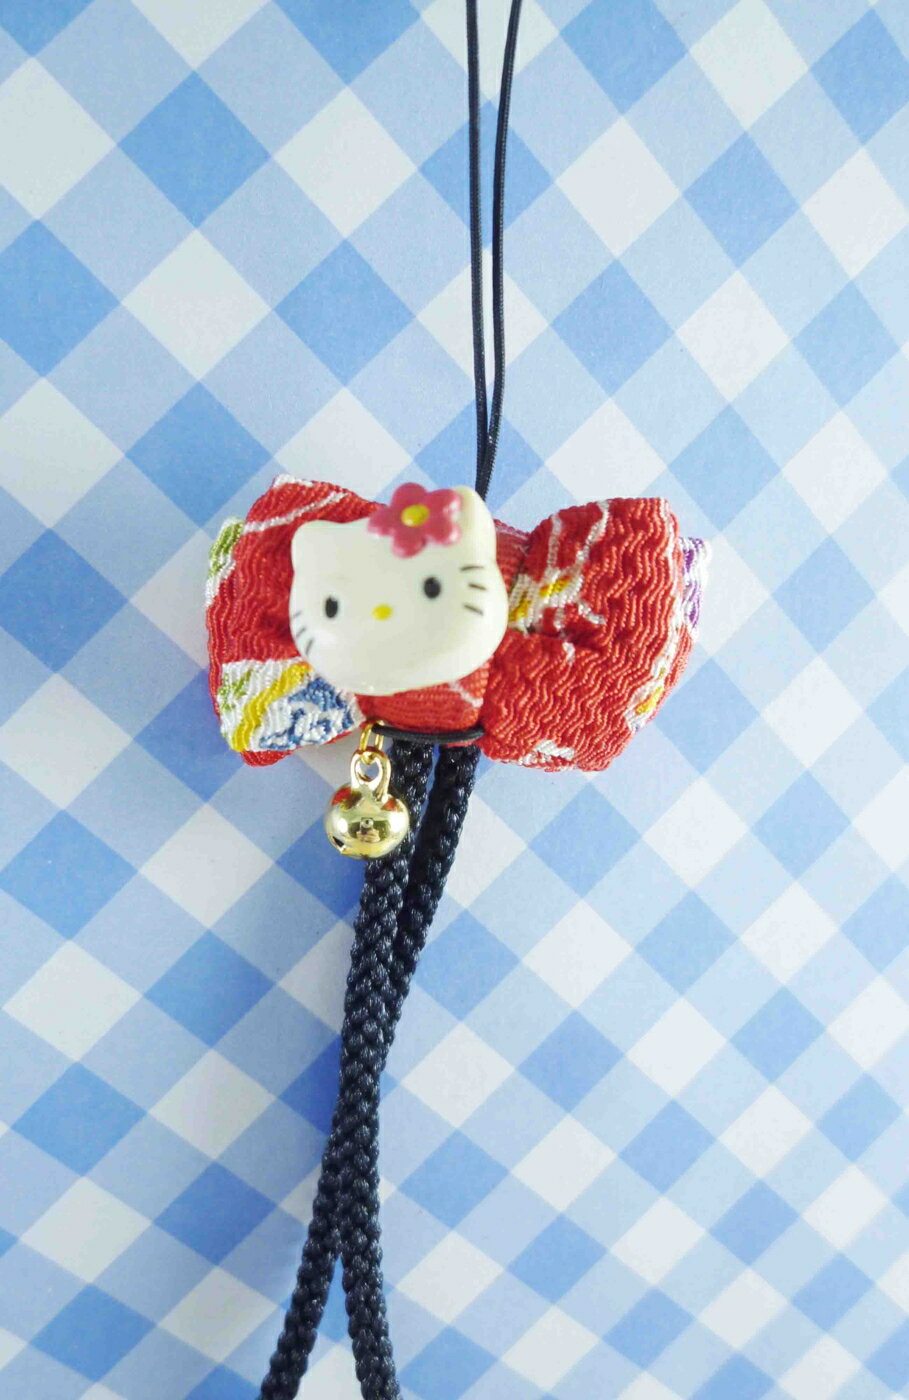 【震撼精品百貨】Hello Kitty 凱蒂貓 KITTY手機吊飾-和風系列-黑紅 震撼日式精品百貨